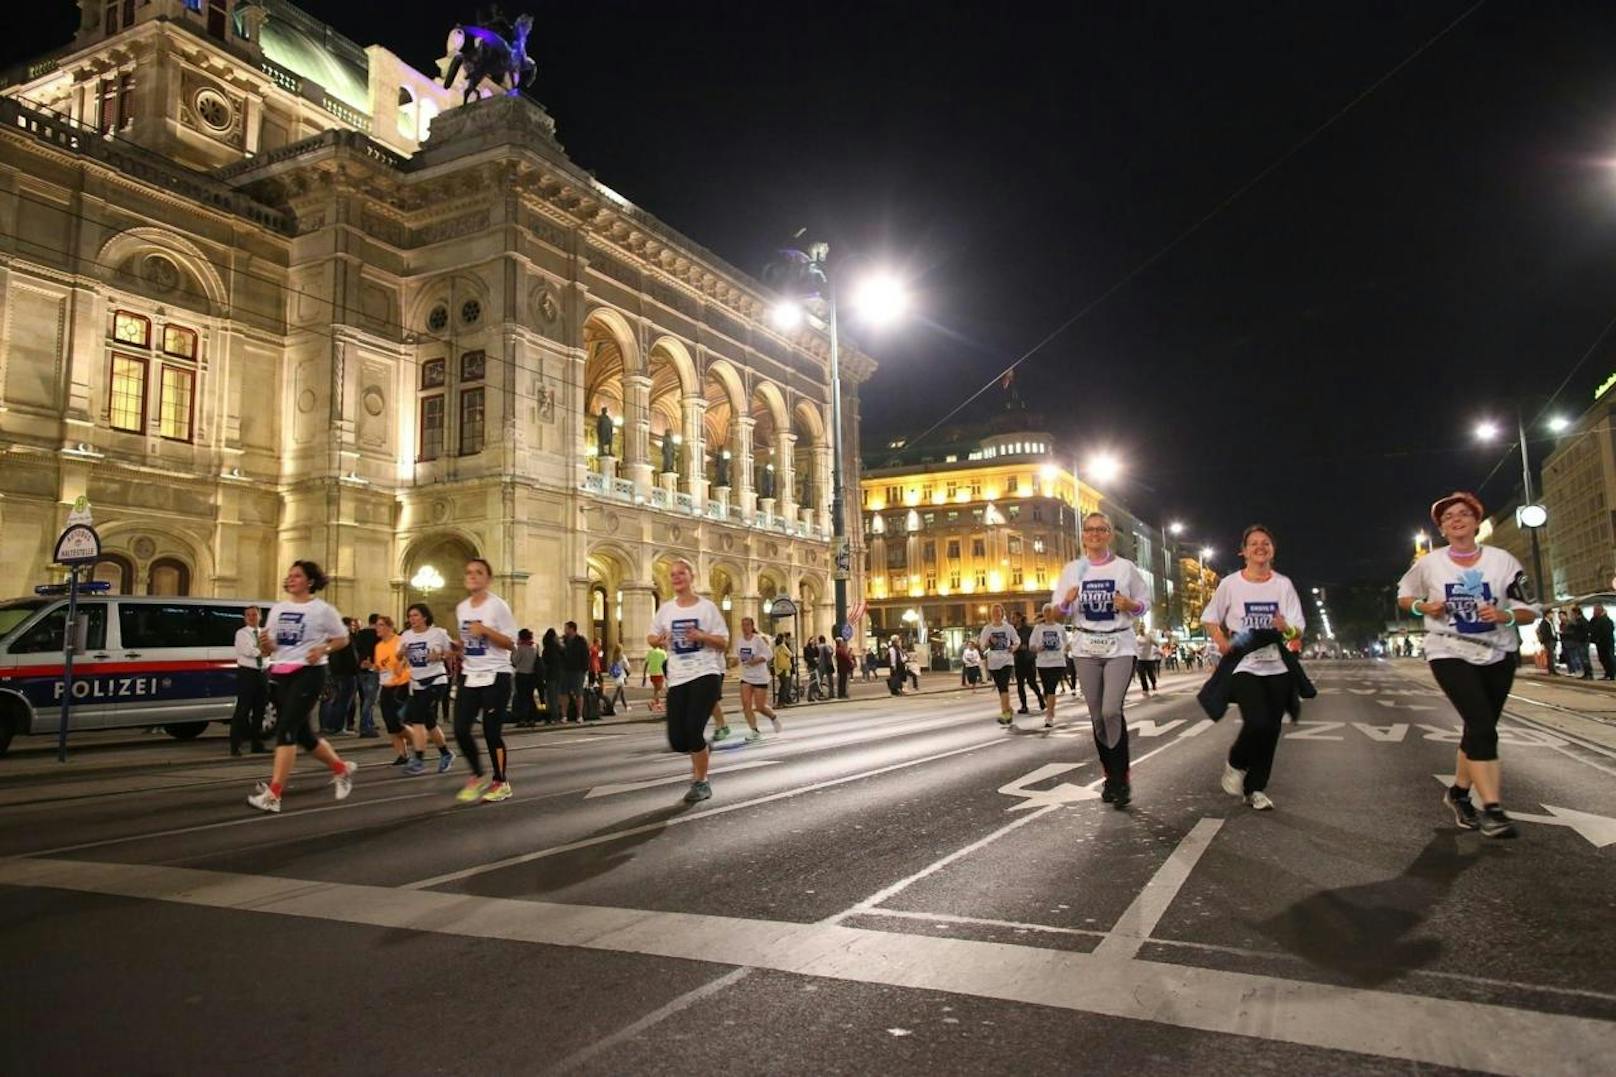 Über 20.000 Teilnehmer laufen am Dienstag wieder zugunsten der Hilfsorganisation Licht für die Welt eine fünf Kilometer lange Runde um den Ring. Dafür werden Ring und Franz-Josefs-Kai zeitweise gesperrt.